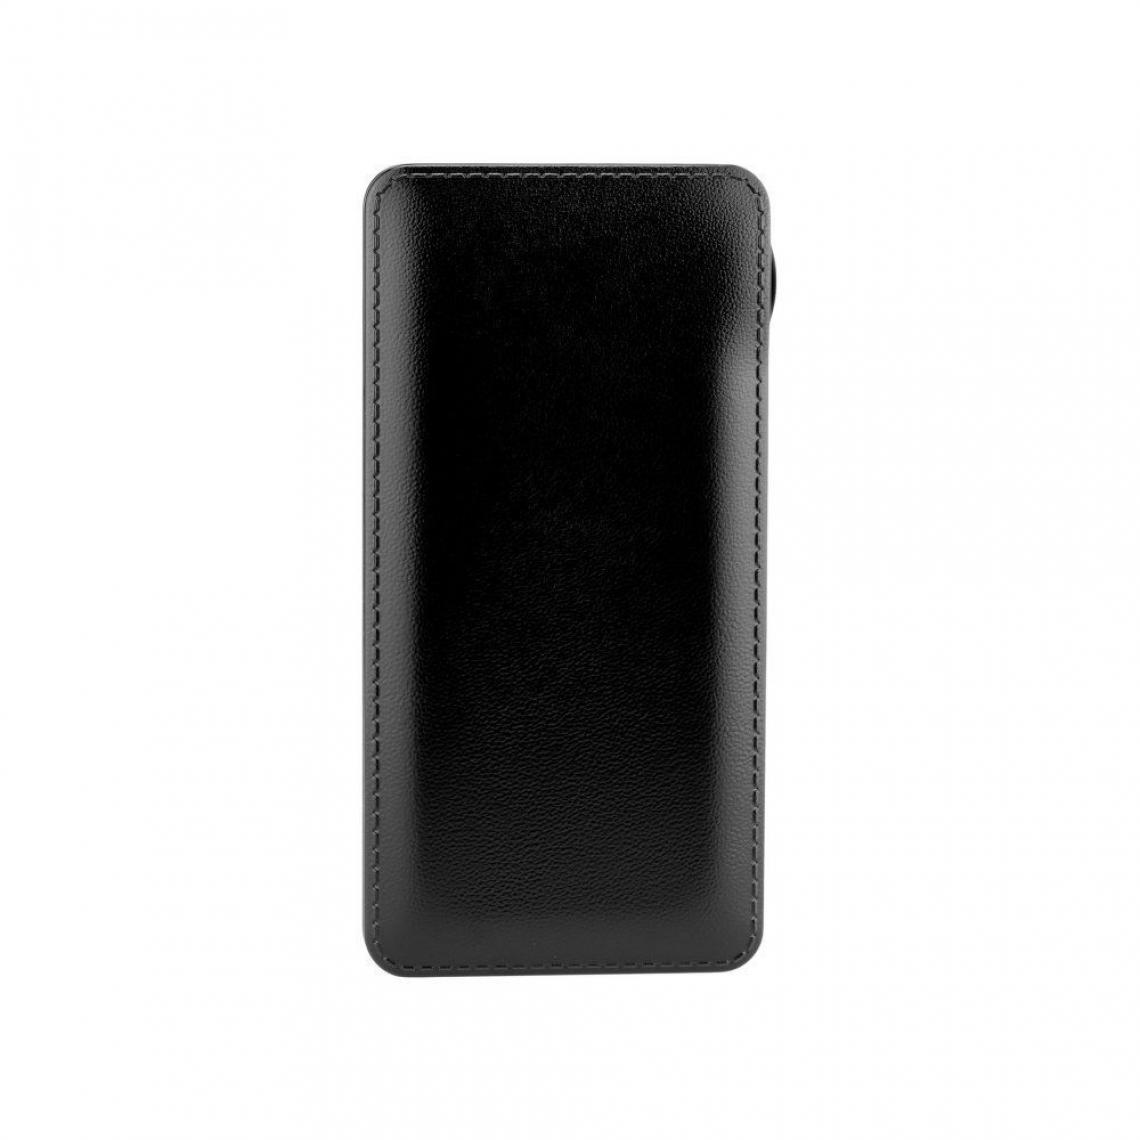 Ozzzo - Chargeur batterie externe 20000 mAh powerbank ozzzo noir pour Microsoft Surface Duo - Autres accessoires smartphone